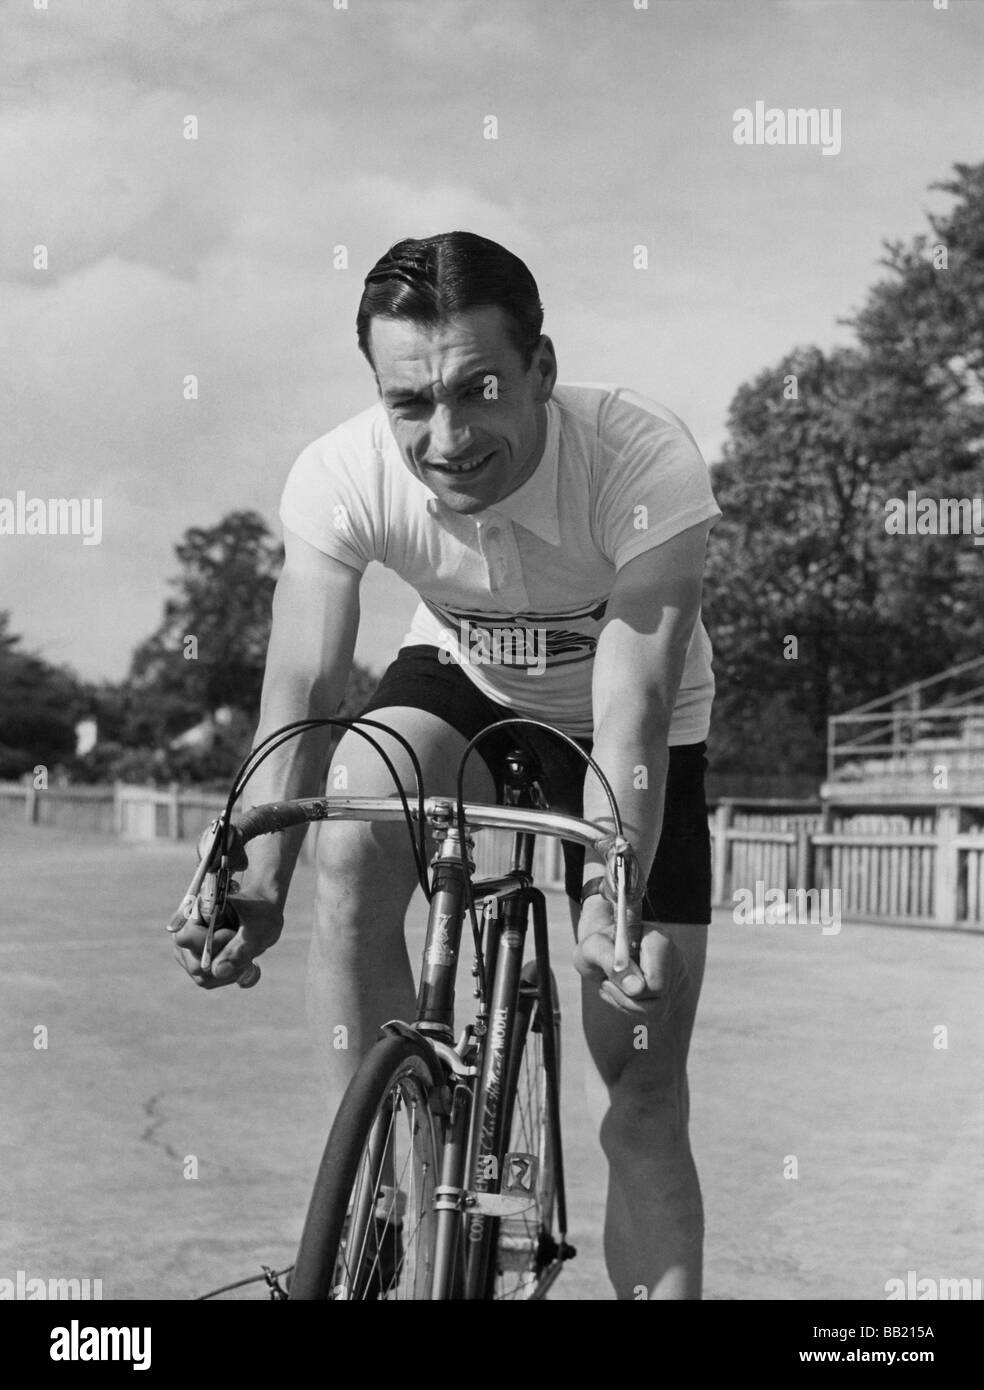 Charles Holland - Pioneer racing ciclista e primo pilota inglese per accedere al Tour de France nel 1937 Foto Stock